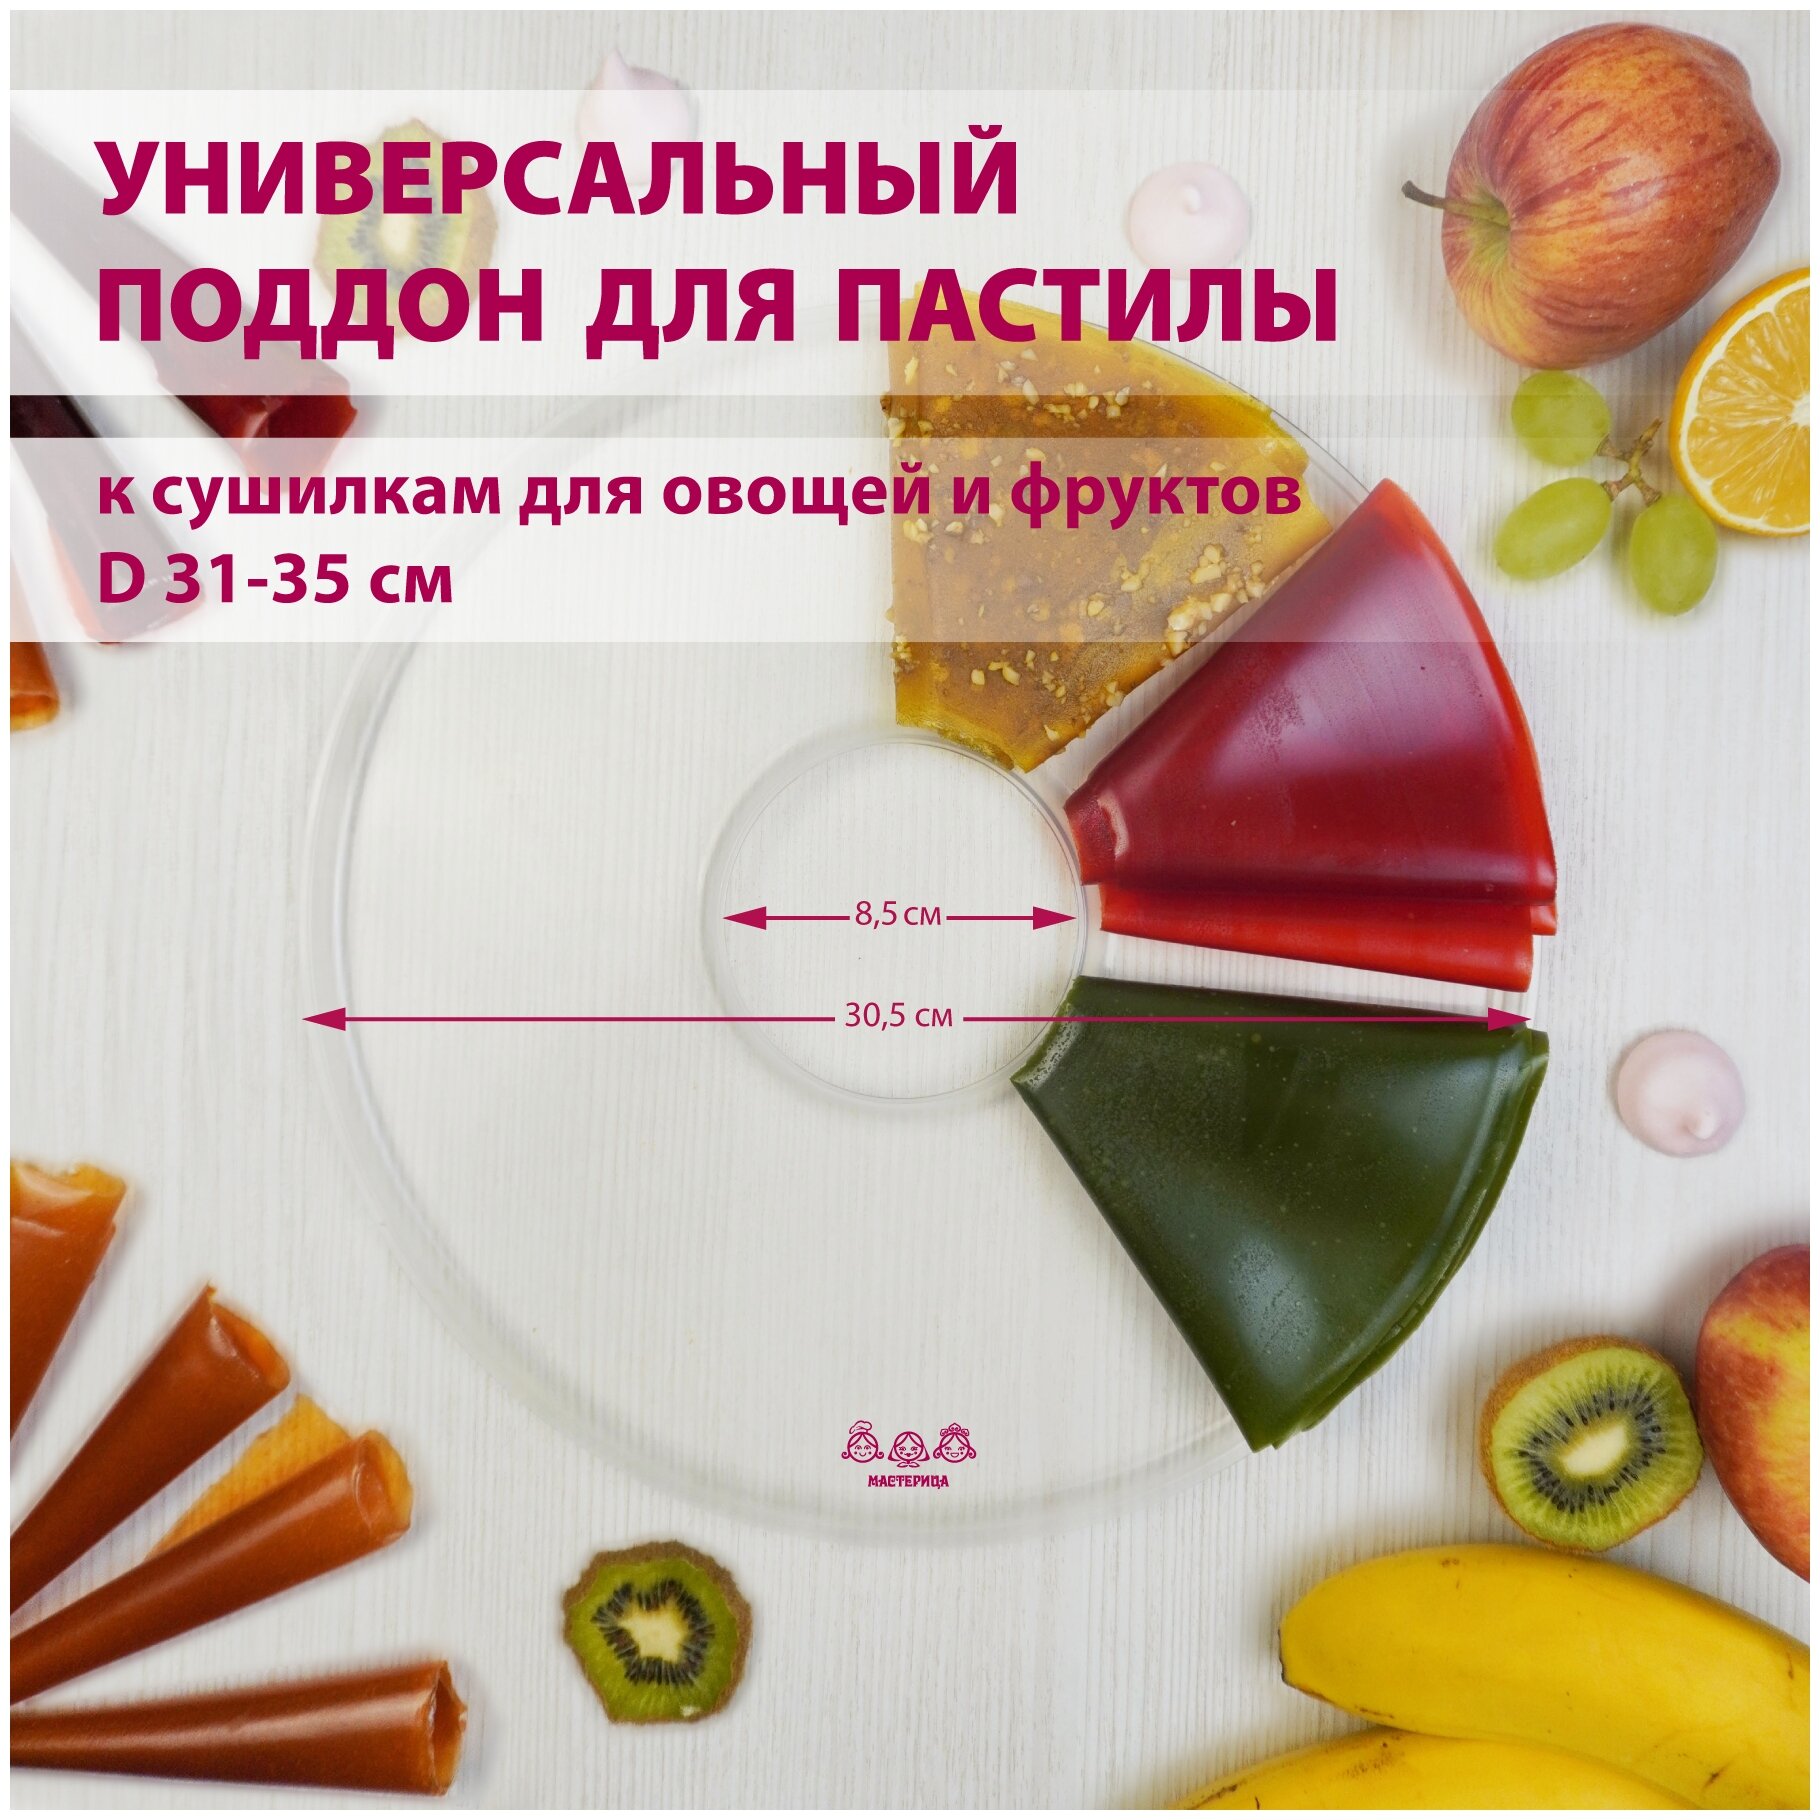 Поддон для пастилы Мастерица PР-0101MVR универсальный к сушилкам для овощей и фруктов D 35 см